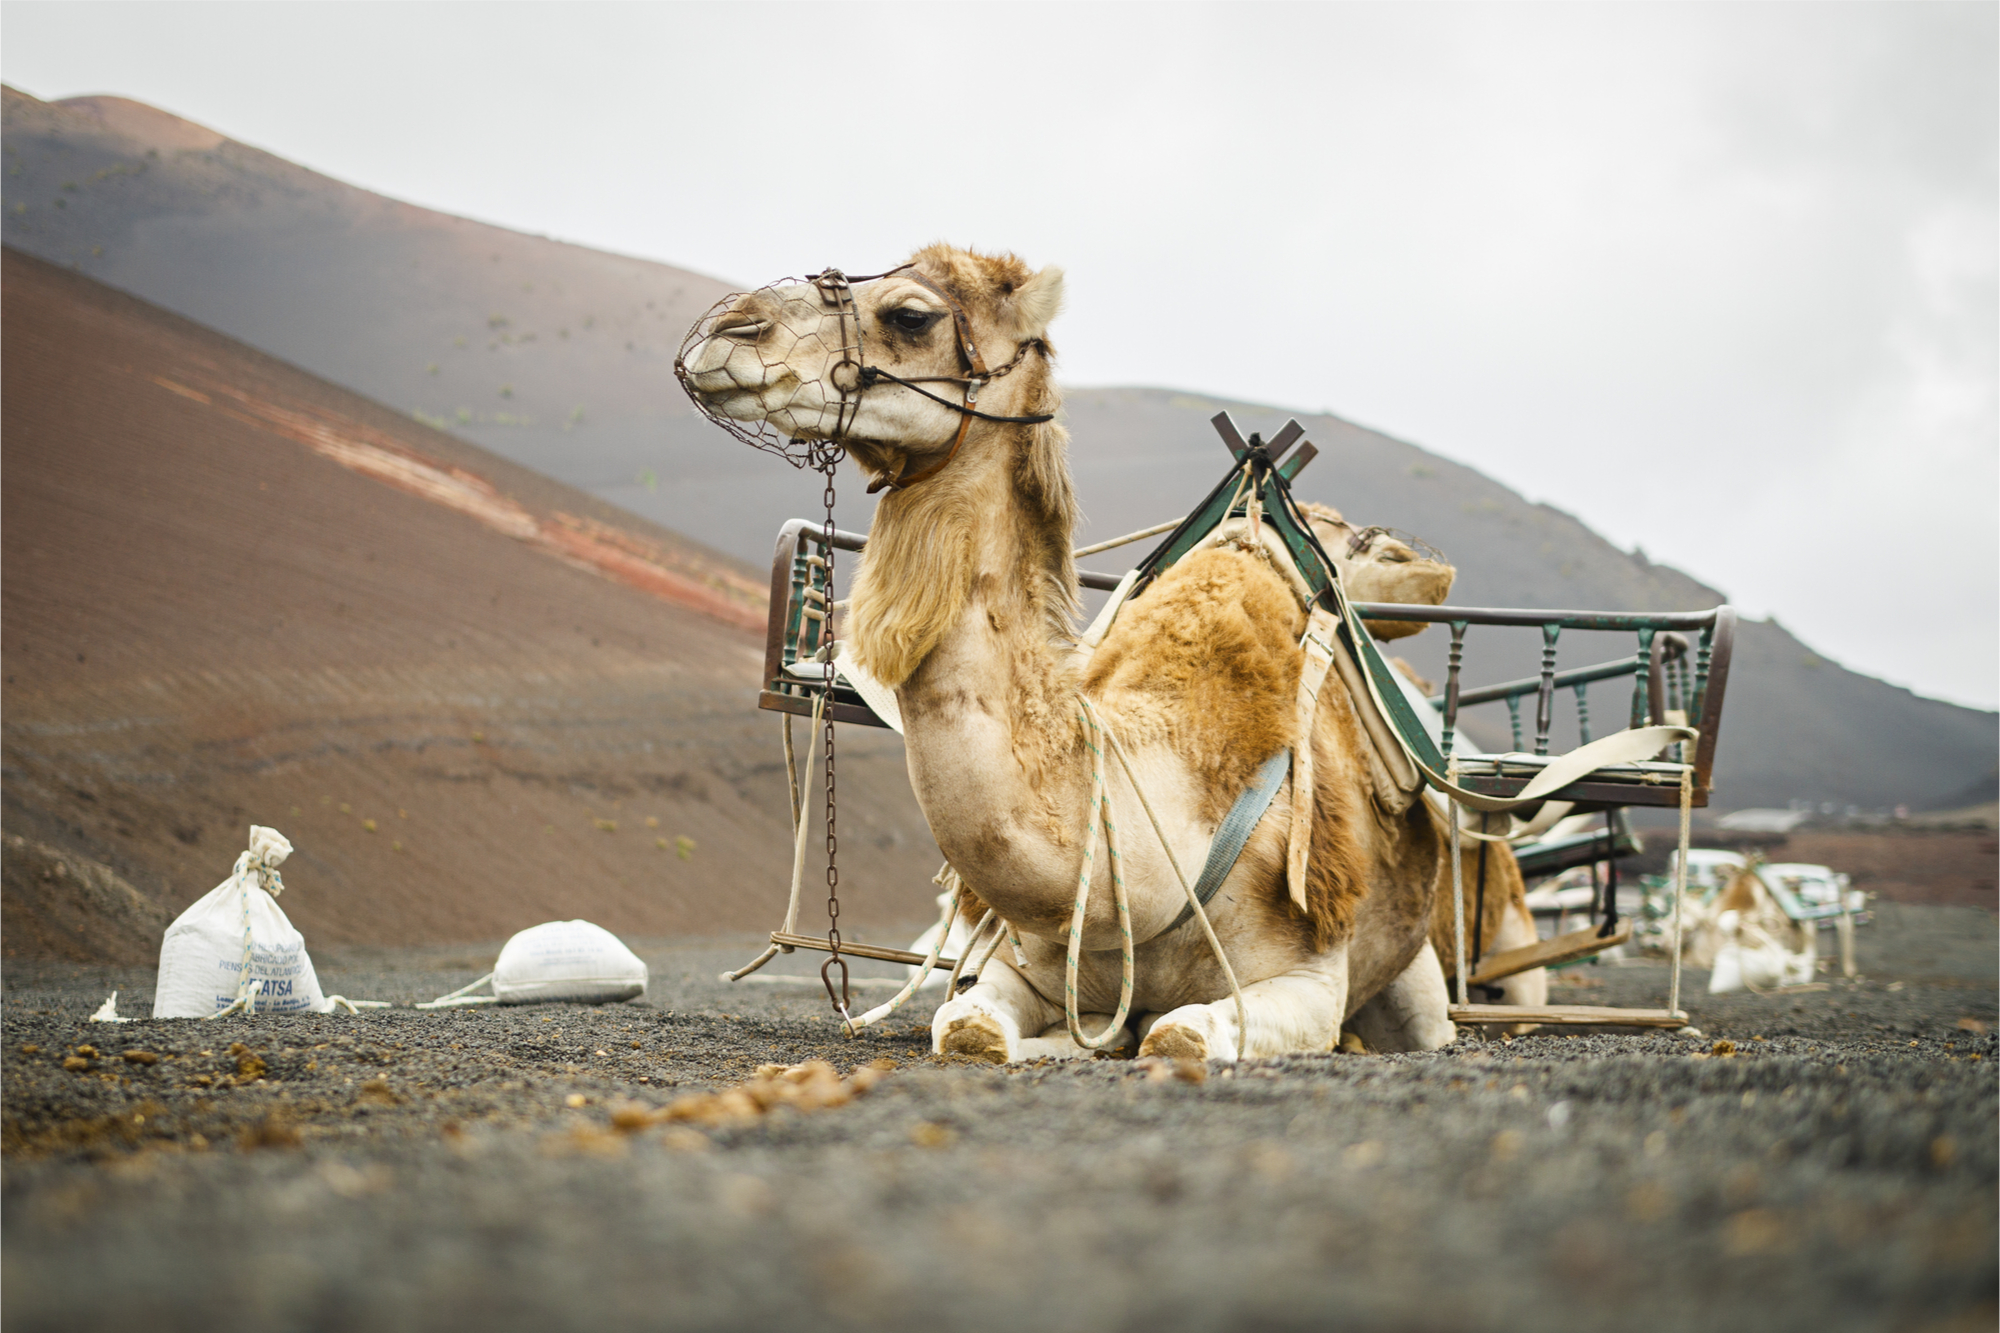 Take a Camel Ride